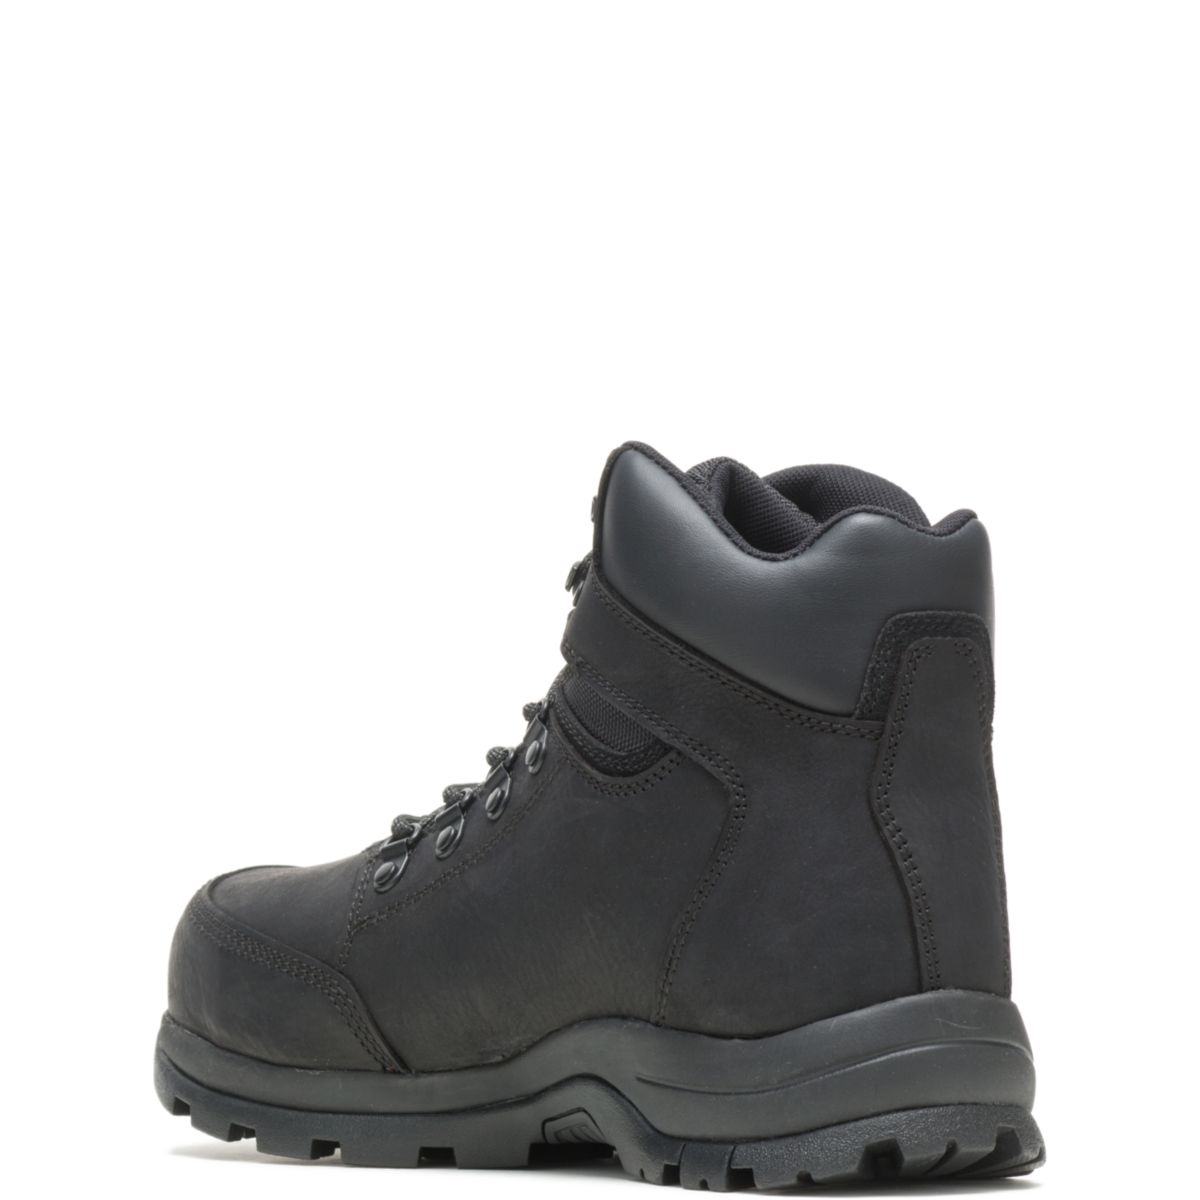 WOLVERINE Men's Grayson Steel Toe Waterproof Work Boot Black - W211042 BLACK - BLACK, 9